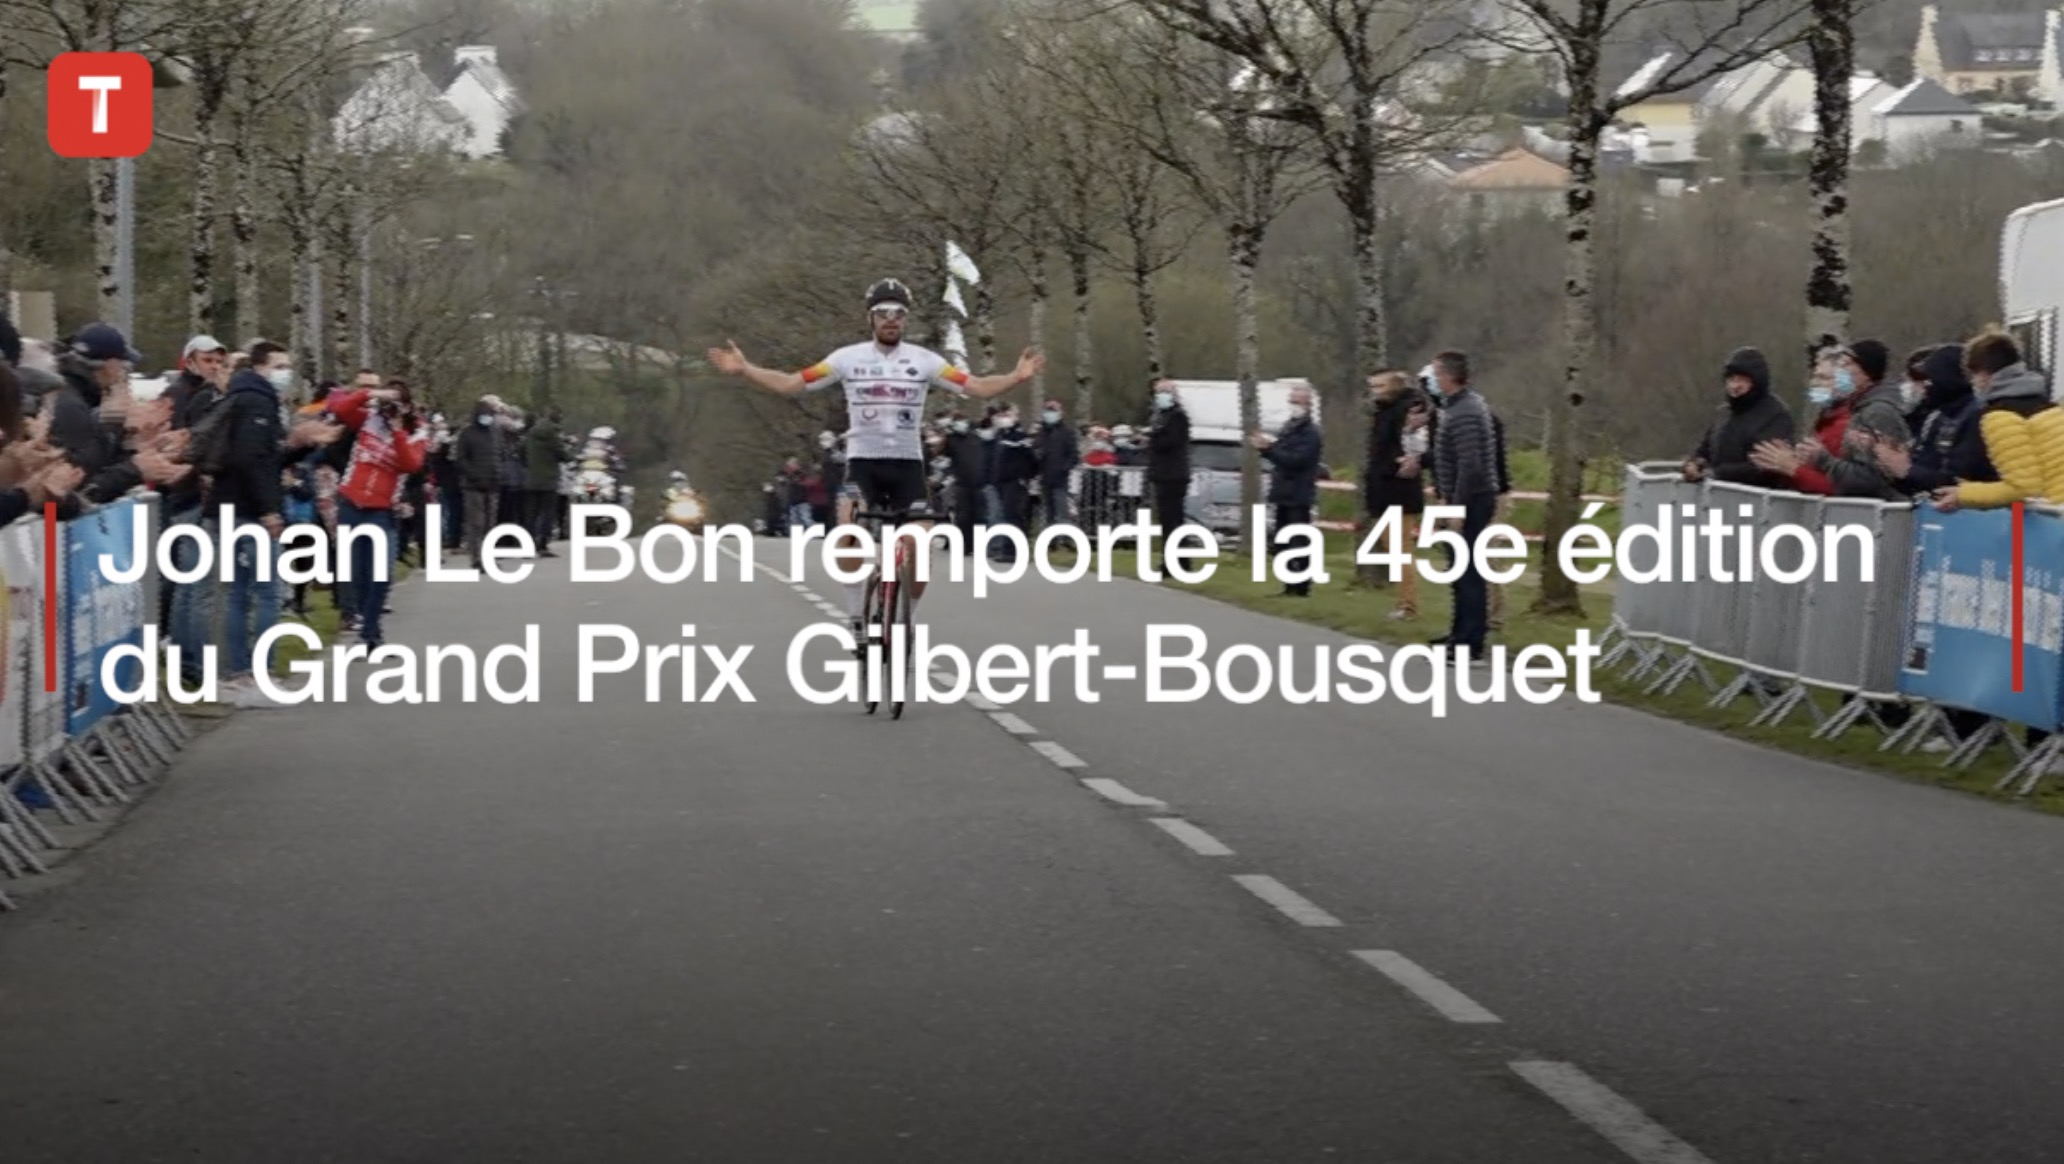 Johan Le Bon remporte la 45e édition du Grand Prix Gilbert-Bousquet (Le Télégramme)